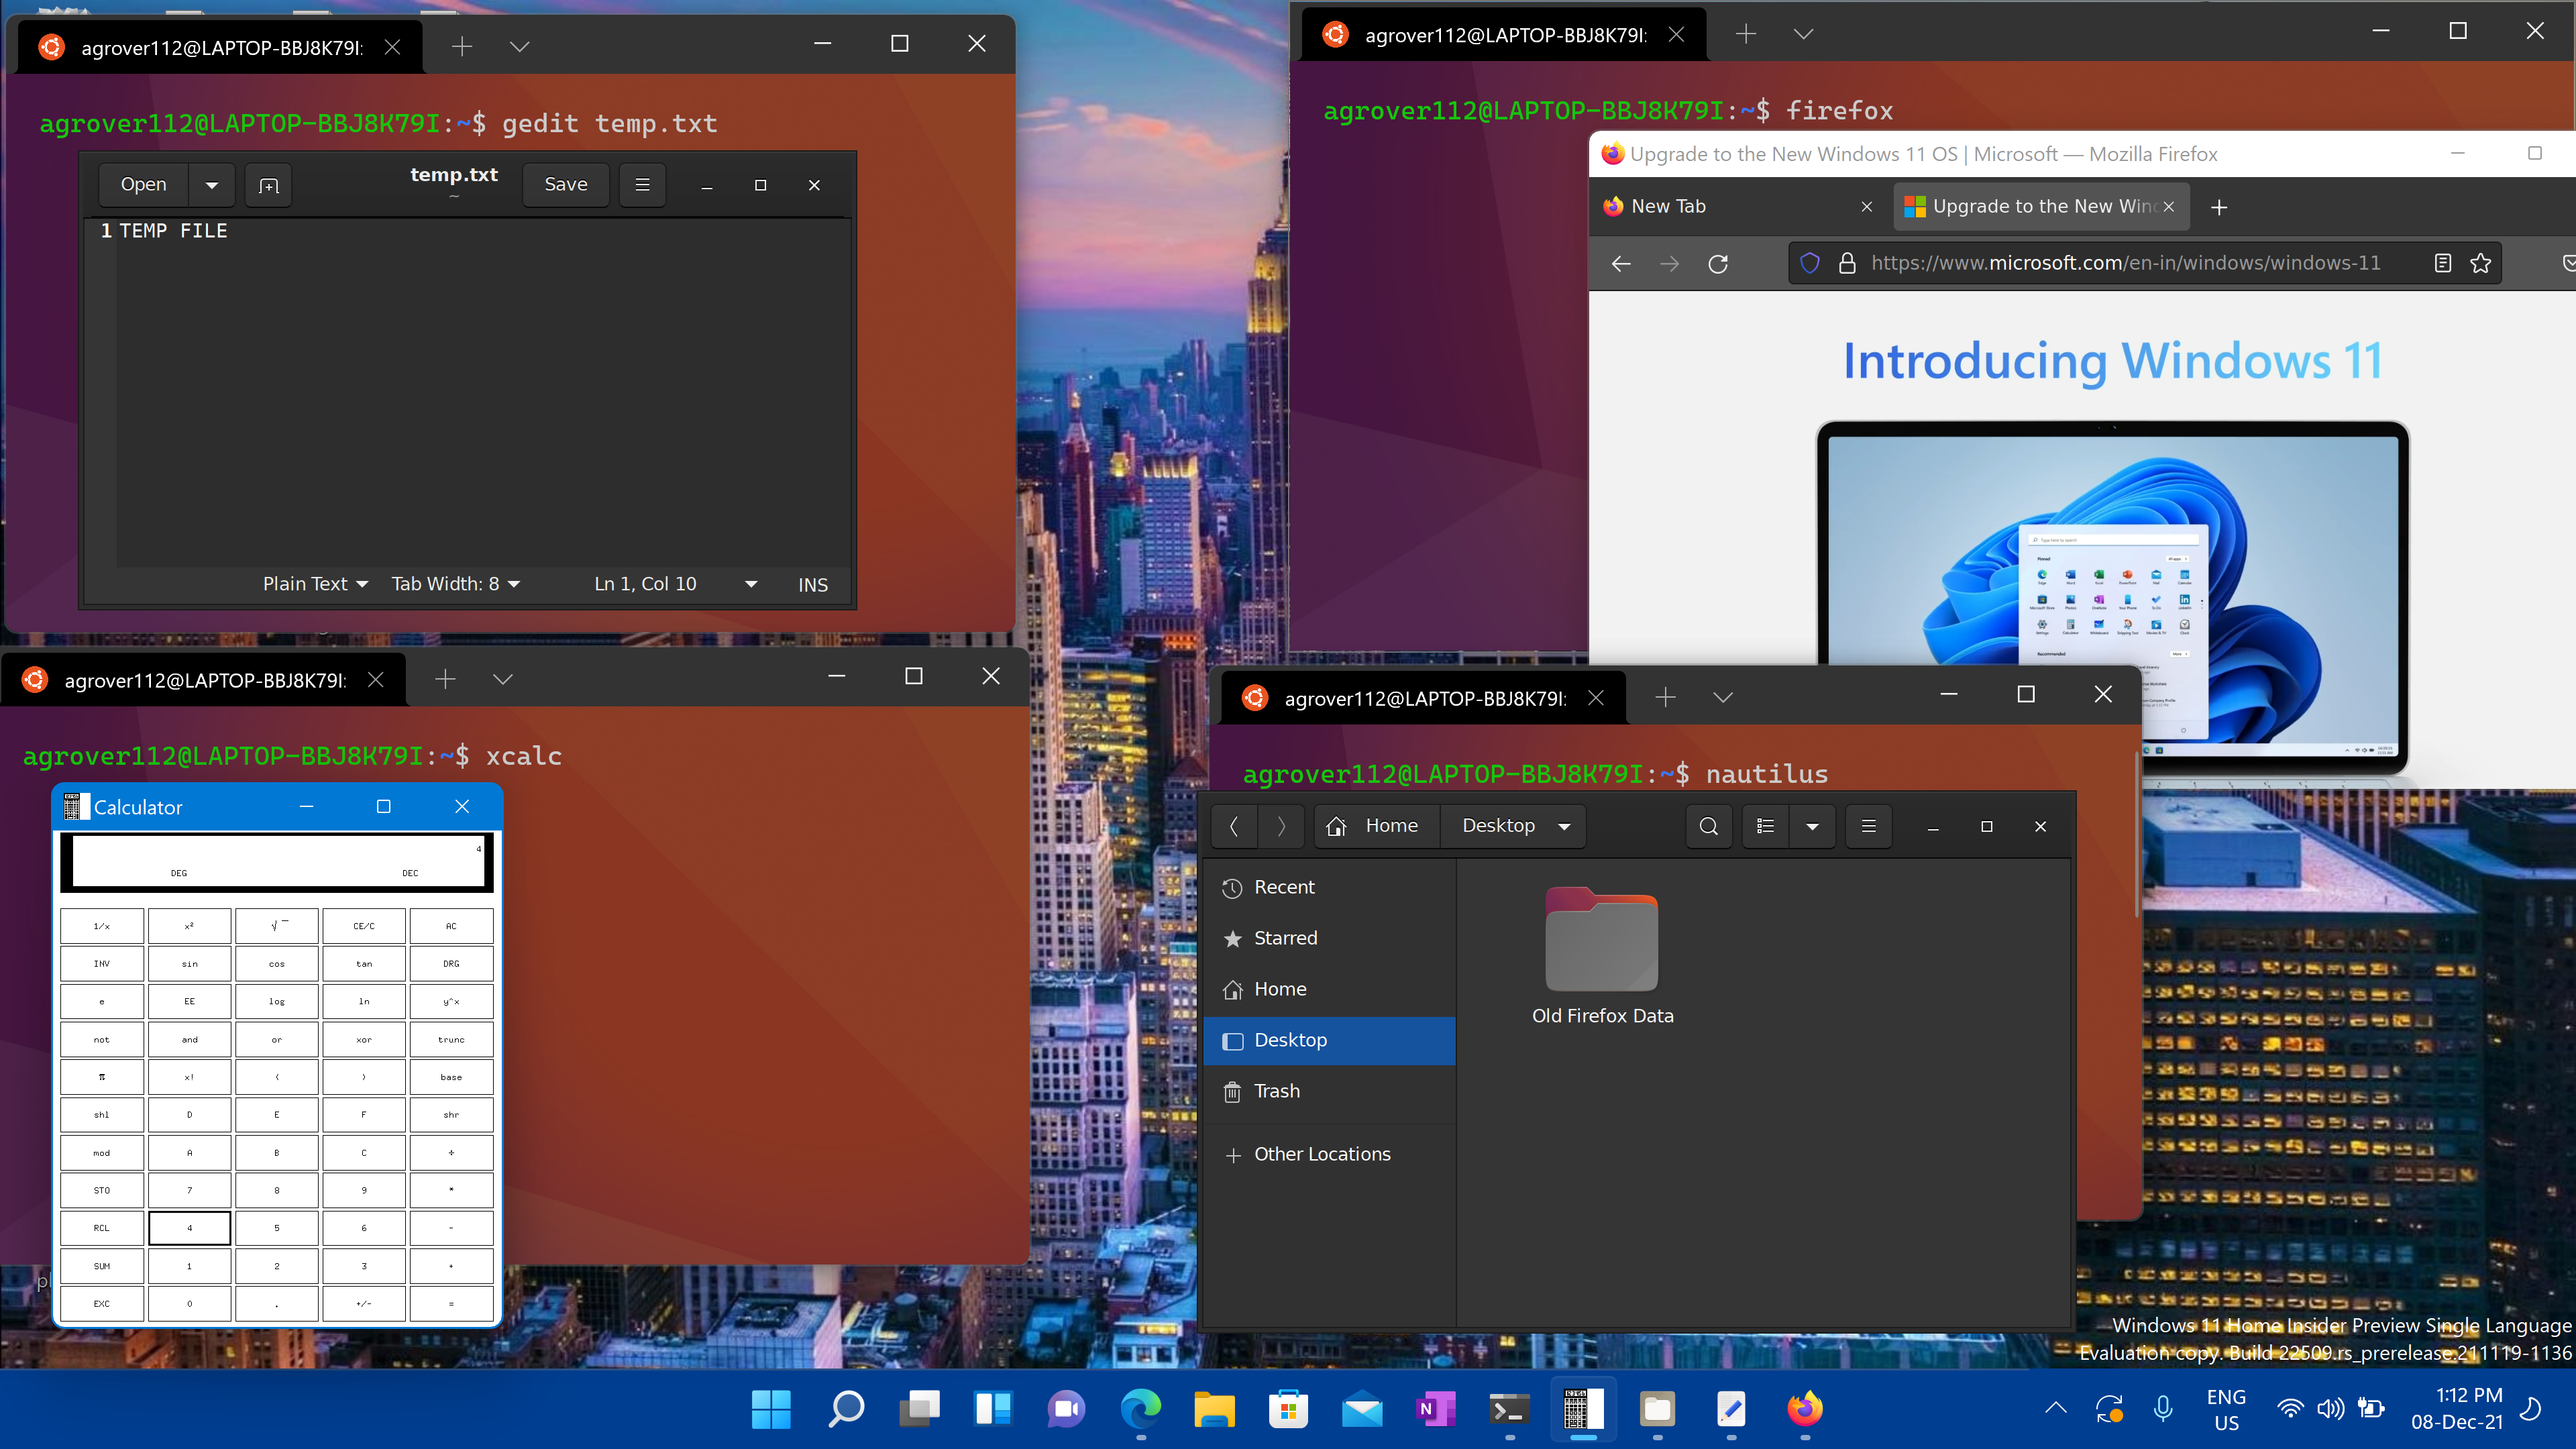 Captura de pantalla de las aplicaciones de Linux y Windows abiertas en un escritorio